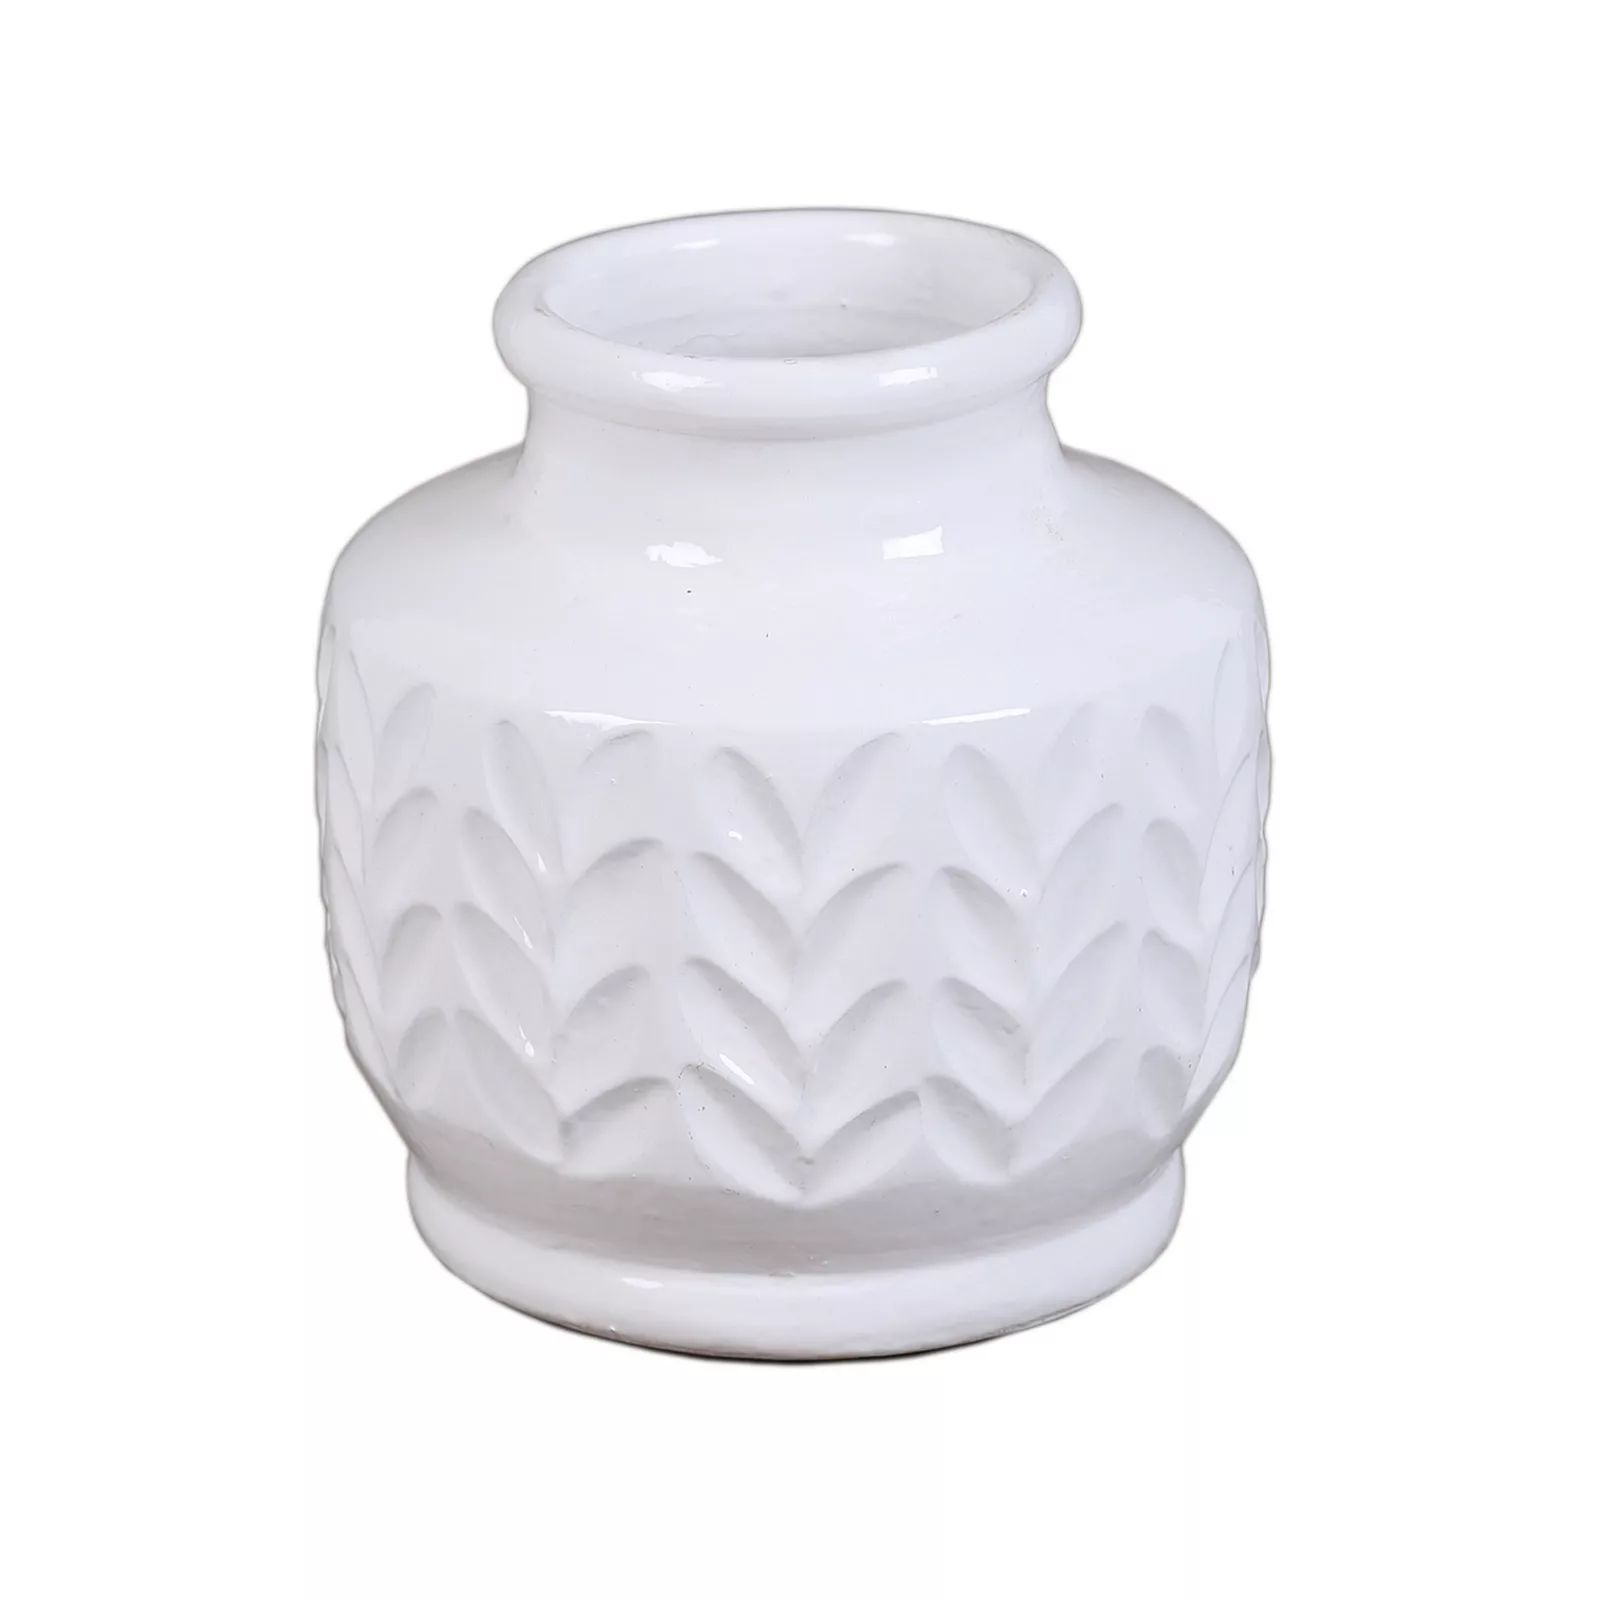 SONOMA Goods for Life Herringbone Vase Table Decor, White | Kohl's